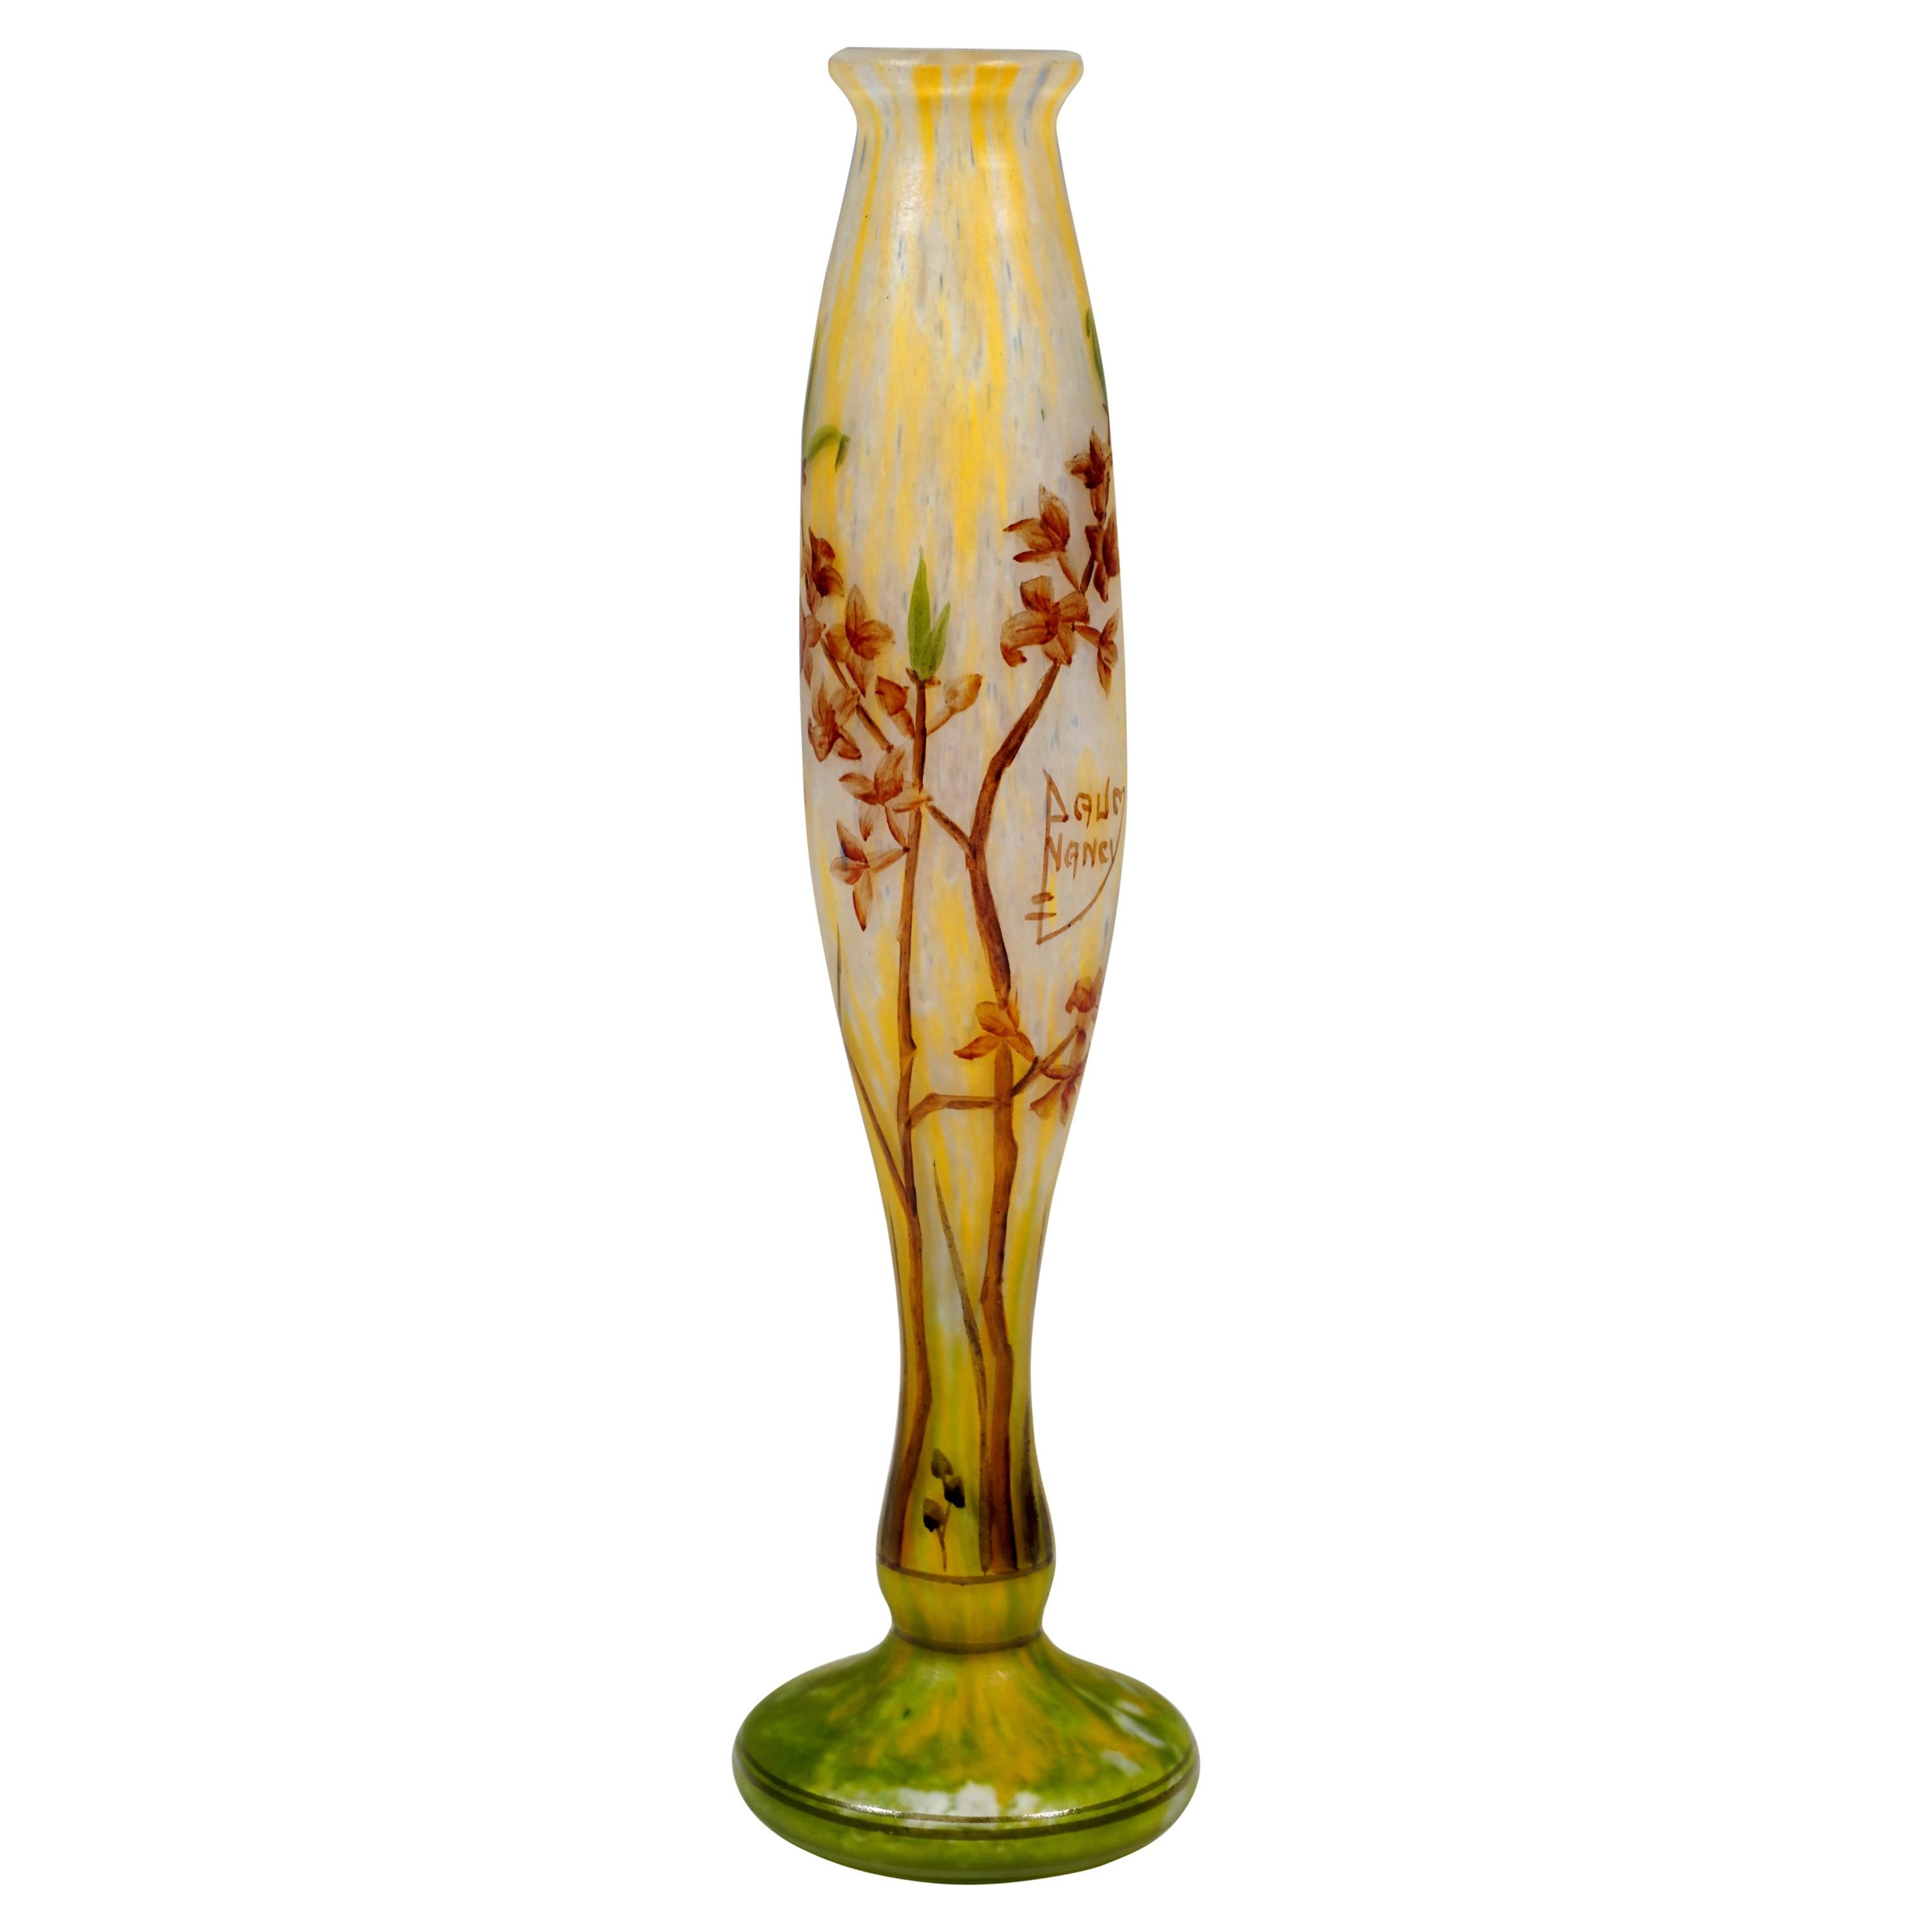 Art Nouveau Vase with Delicate Flower Branches Decor, Daum Nancy, France, c 1900